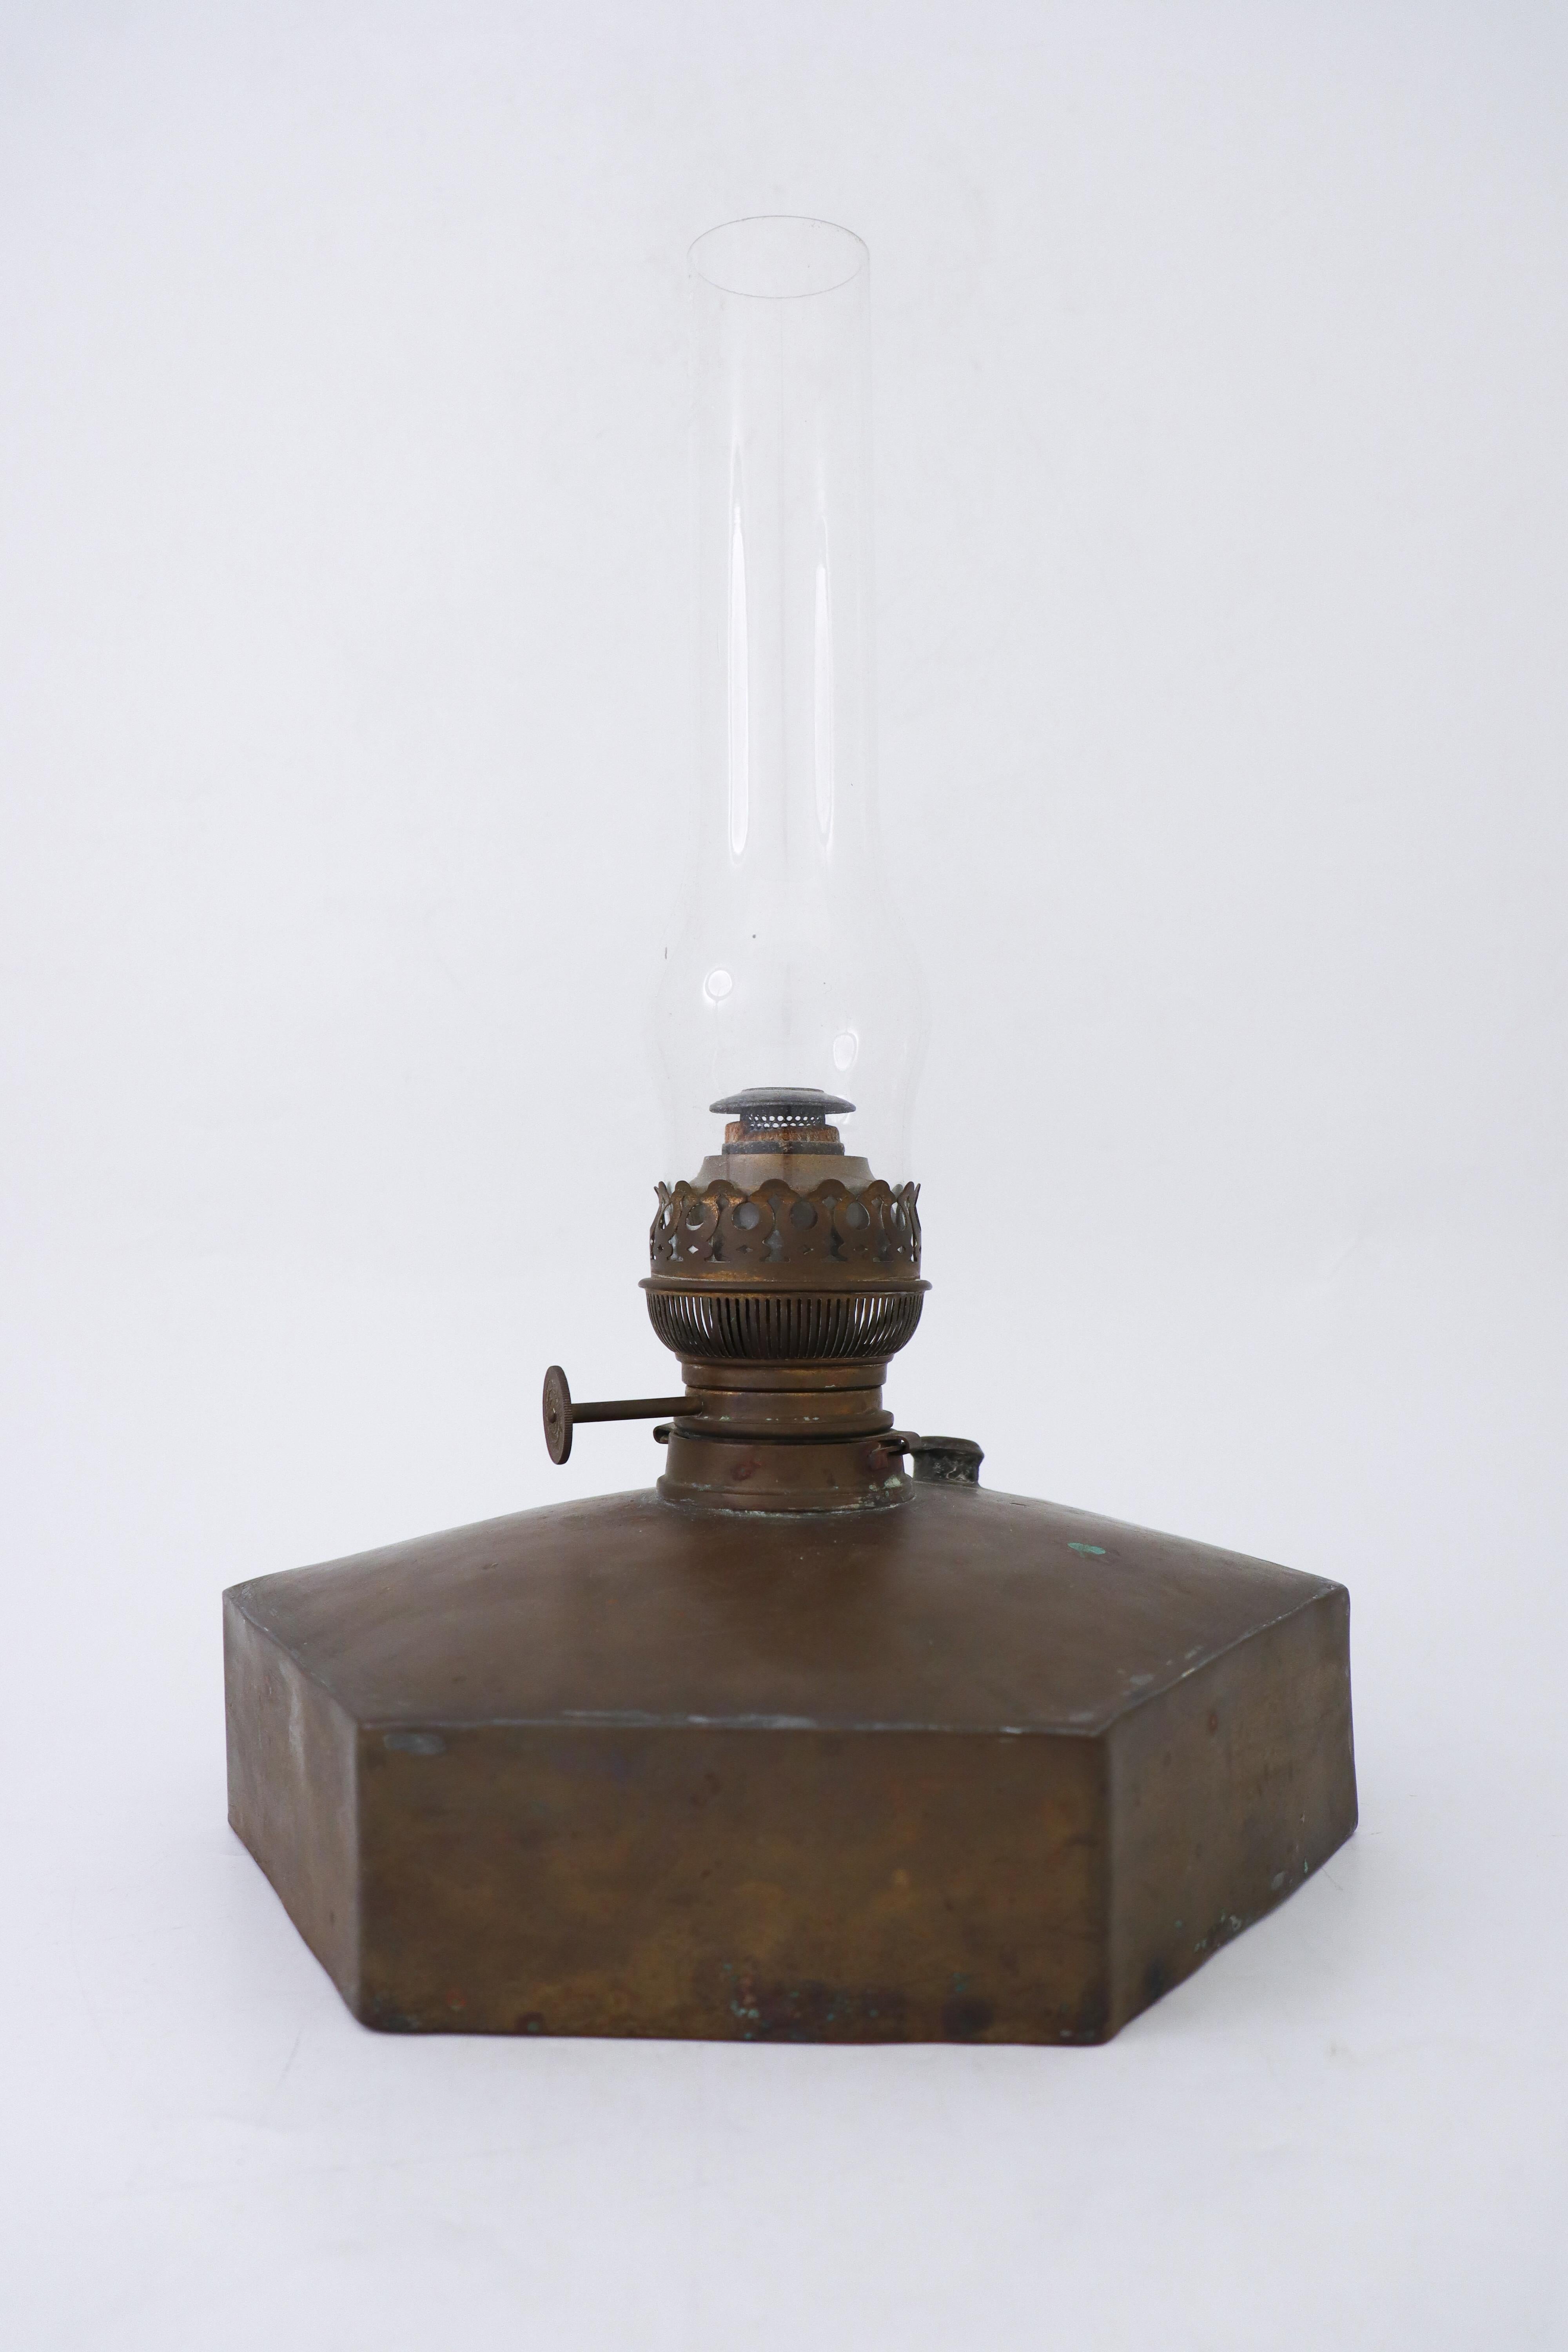 kerosene lamp history